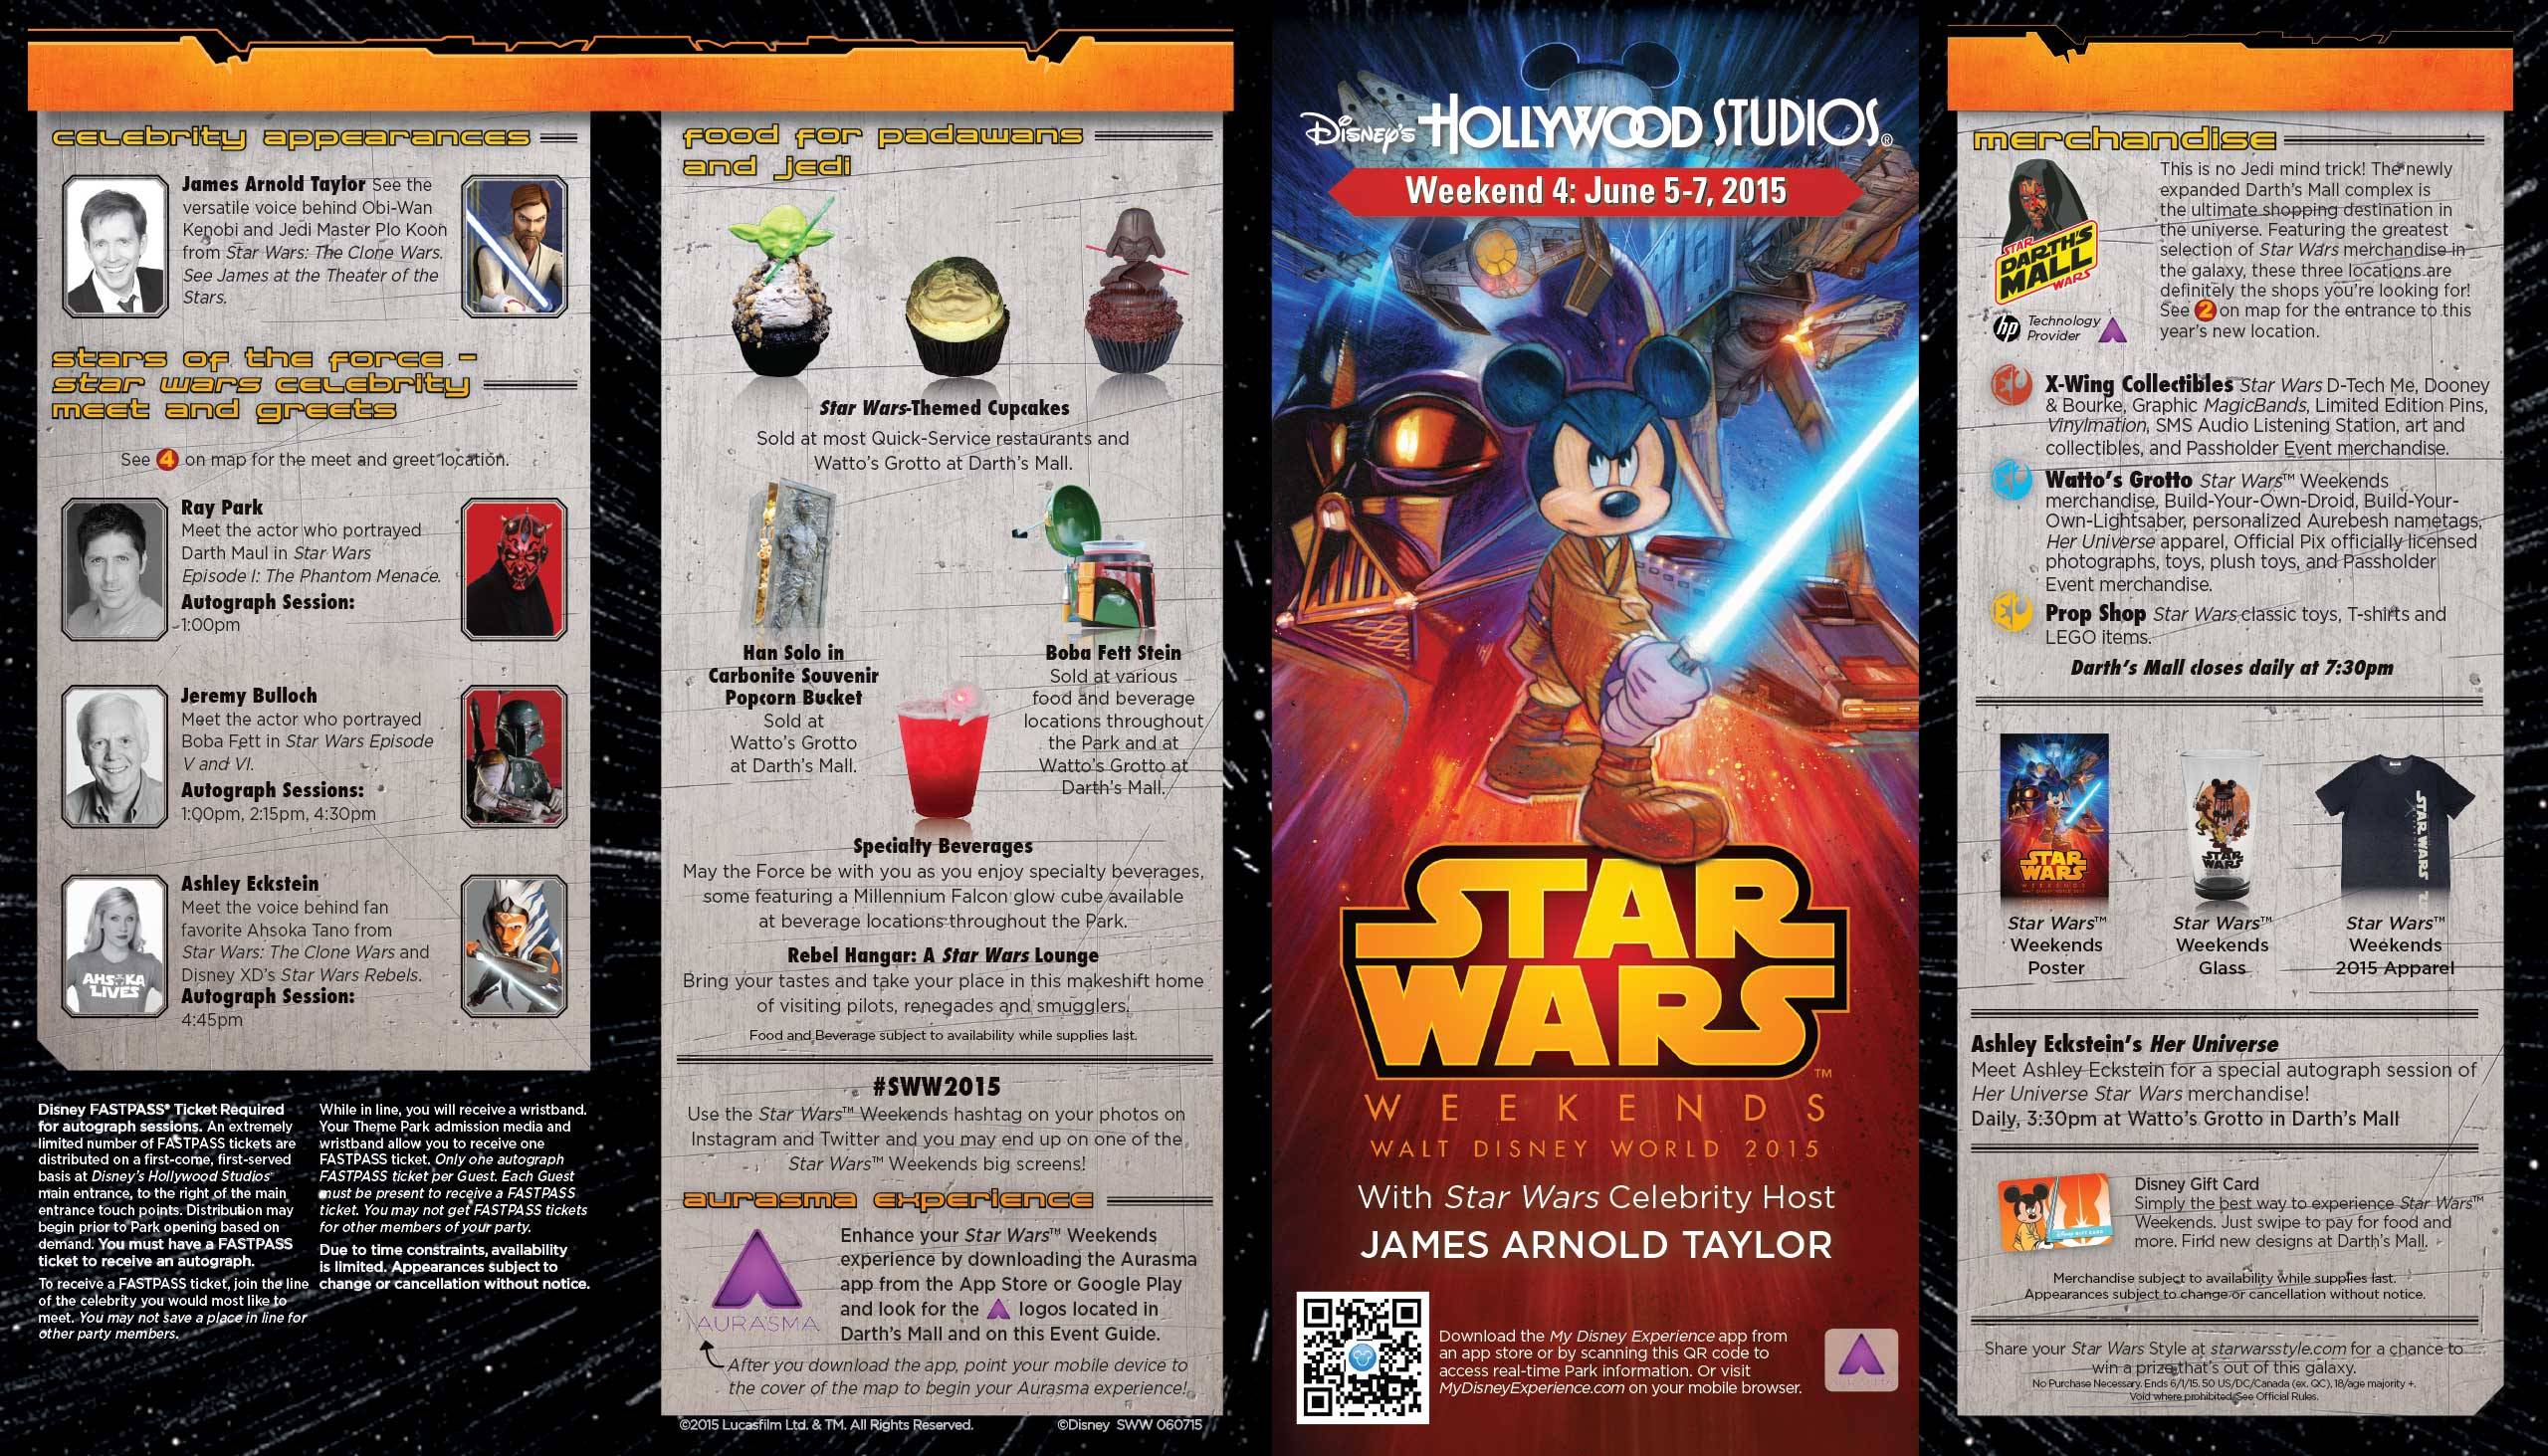 2015 Star Wars Weekends June 5 - 7 Weekend 4 guide map